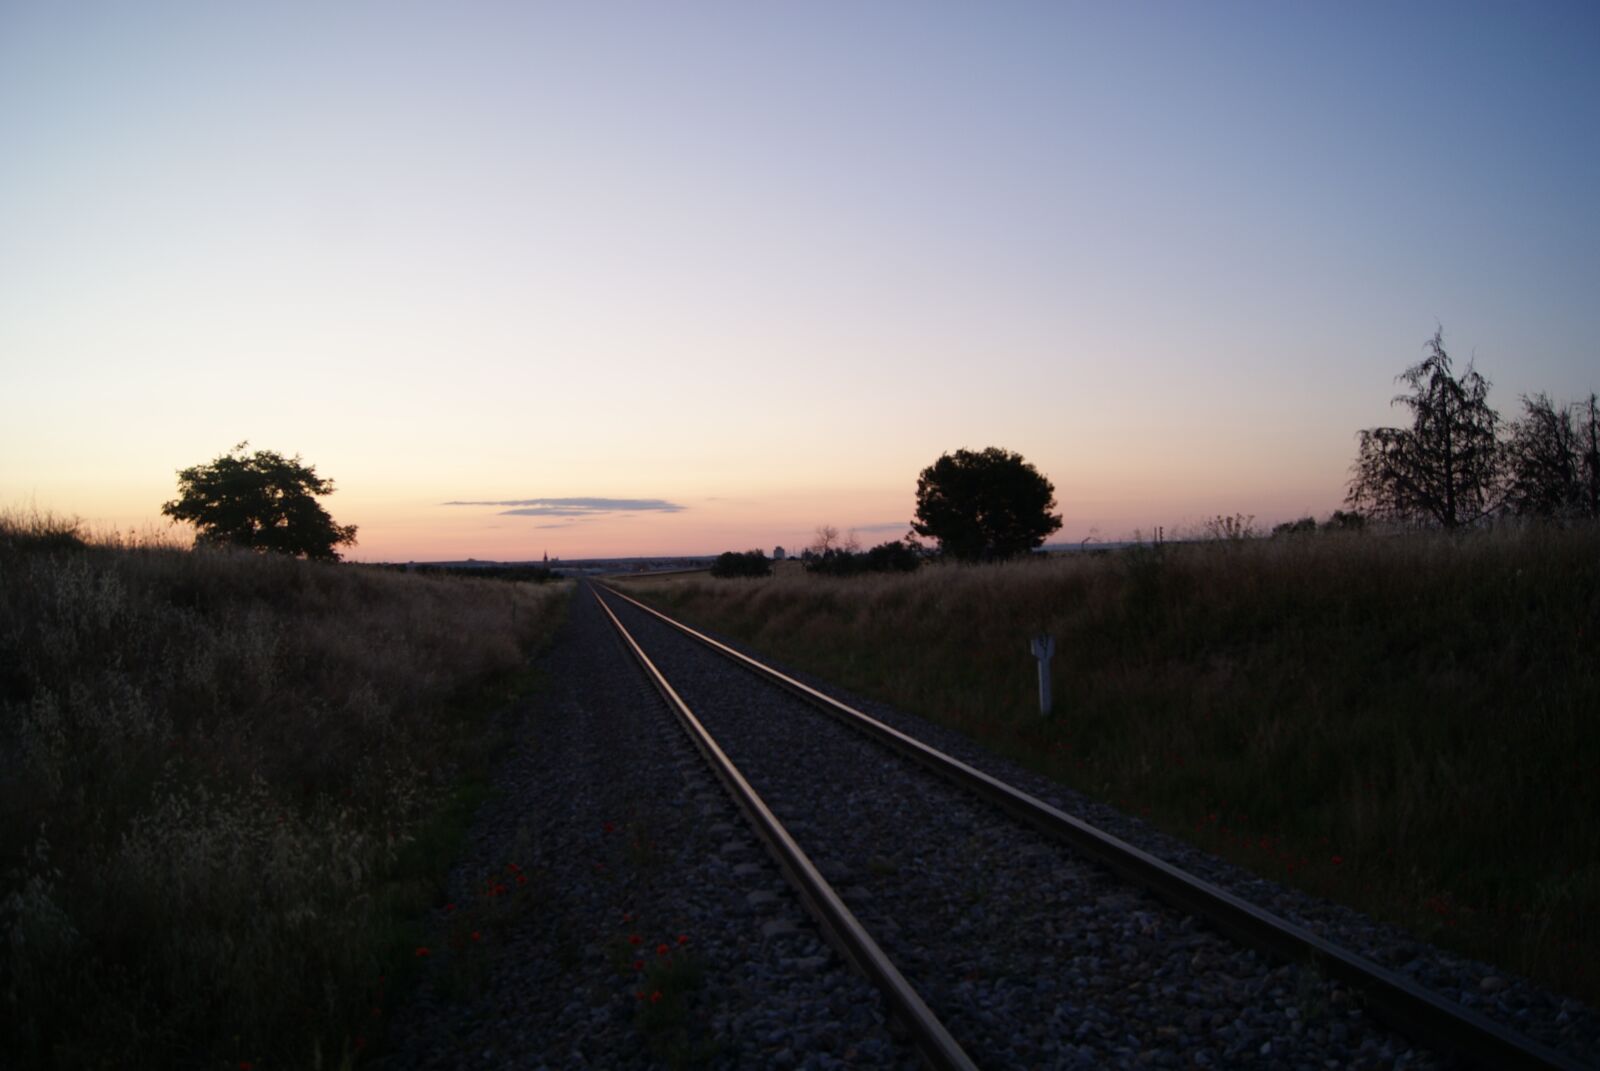 Sony Alpha DSLR-A230 sample photo. Dawn, via, train photography